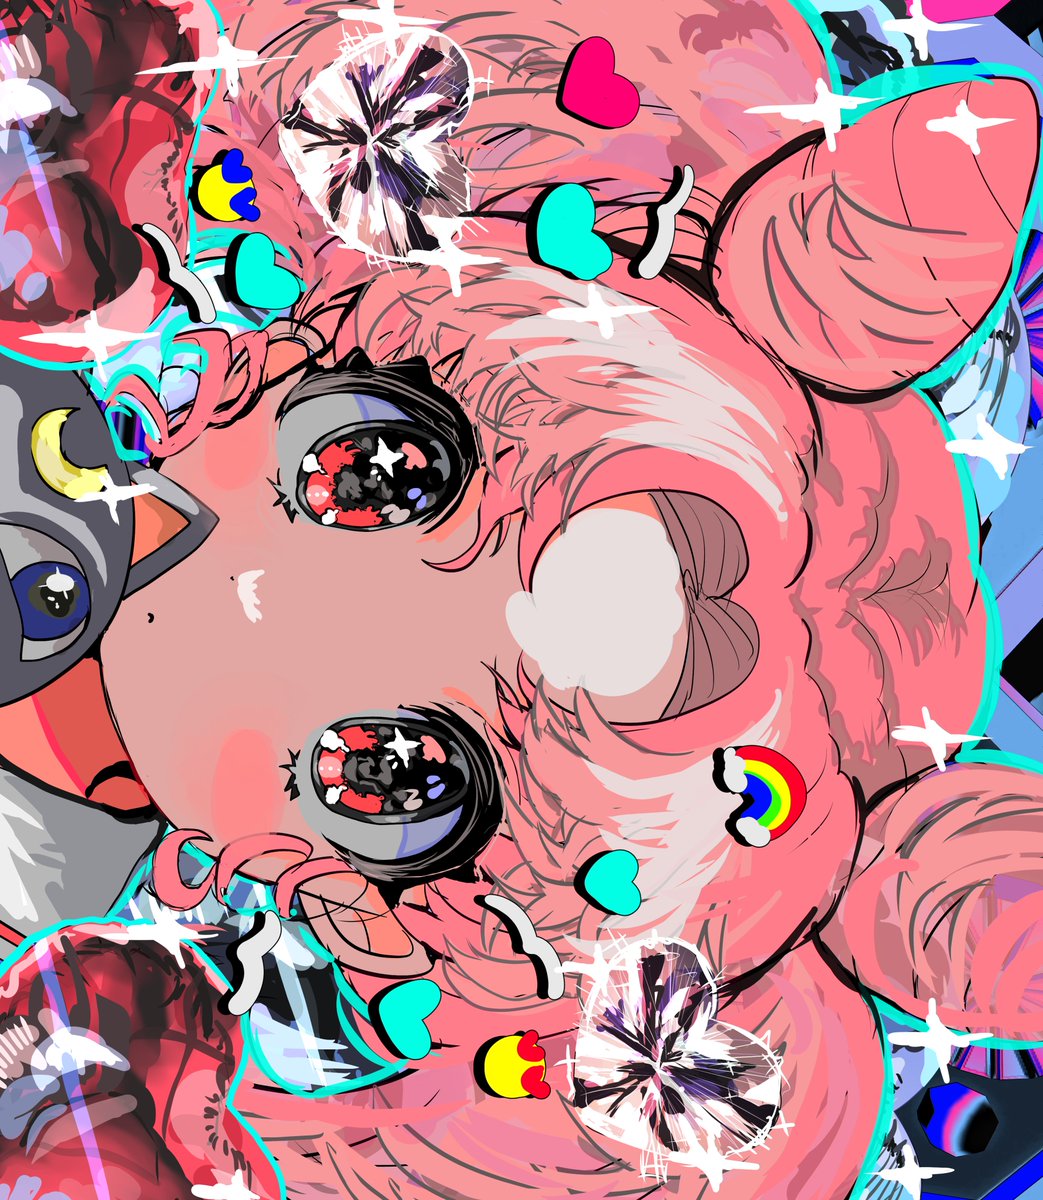 ちびうさ 「#SailorMoon 」|藻前まっく/momae macのイラスト